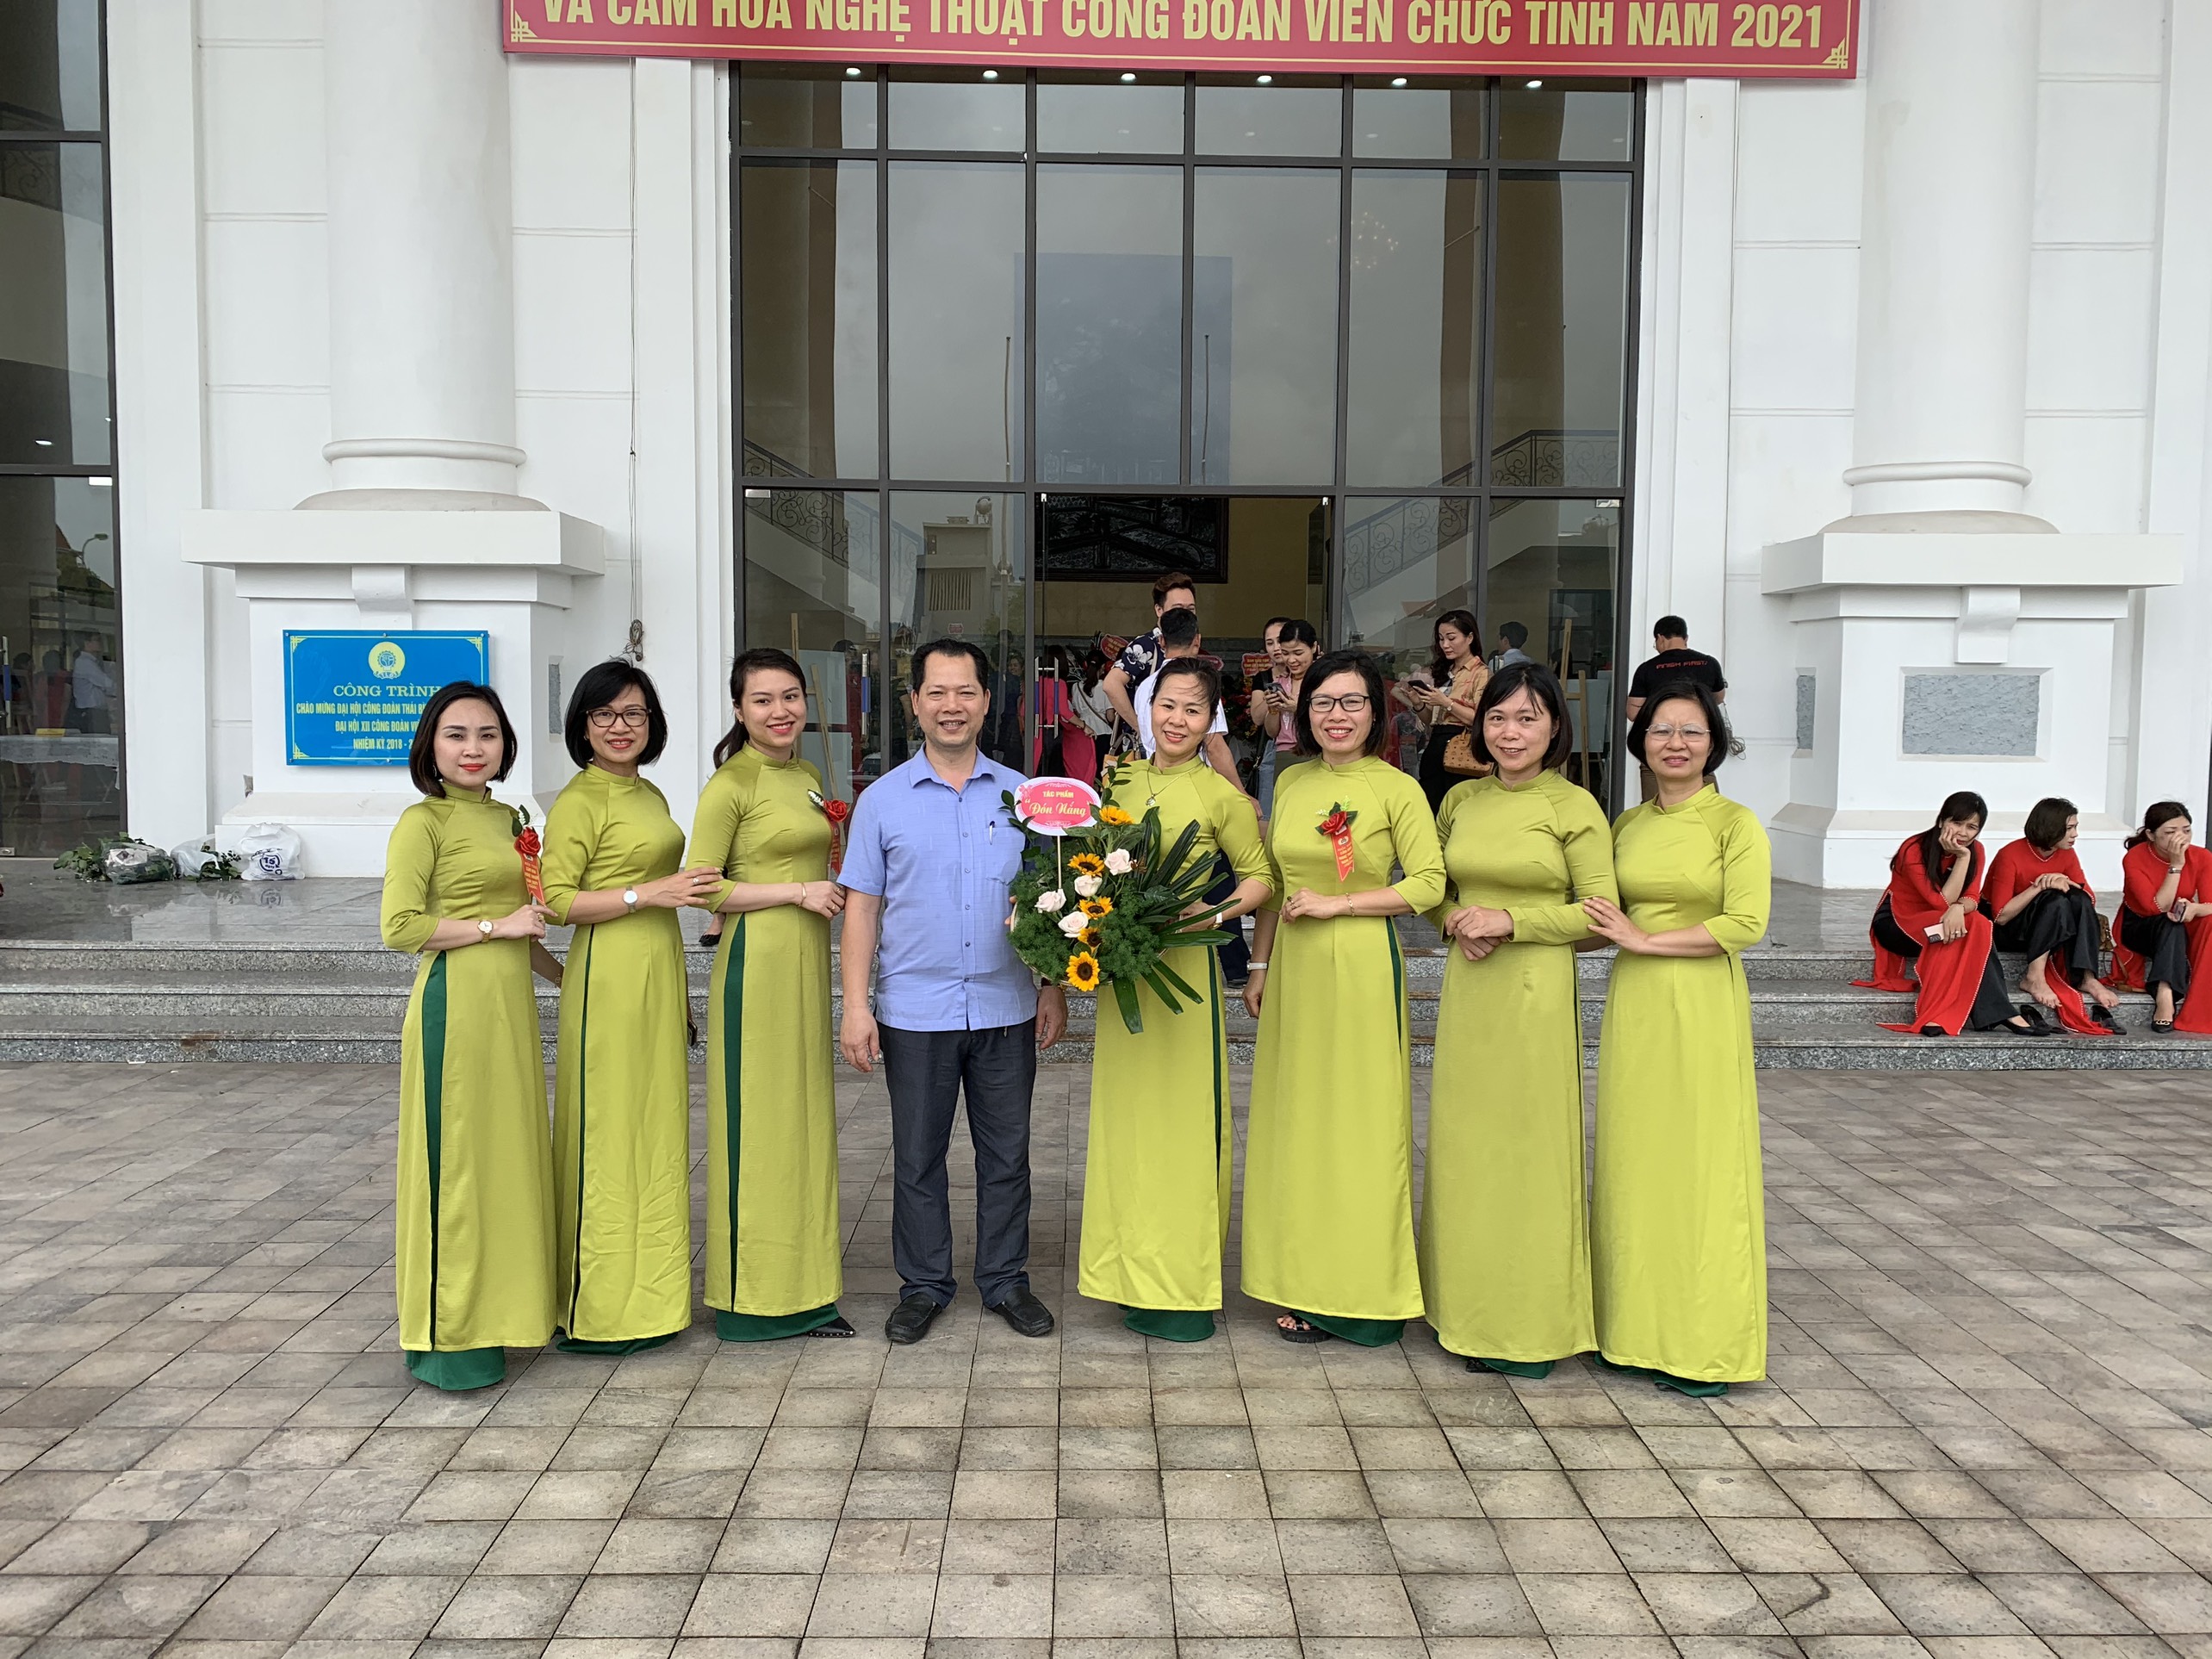 Tập thể nữ công chức, viên chức Cục thi hành án dân sự tỉnh Thái Bình tham gia Hội thi “Duyên dáng áo dài truyền thống công sở” qua ảnh và “Cắm hoa nghệ thuật” với chủ đề “Nét đẹp phụ nữ Việt Nam năm 2021